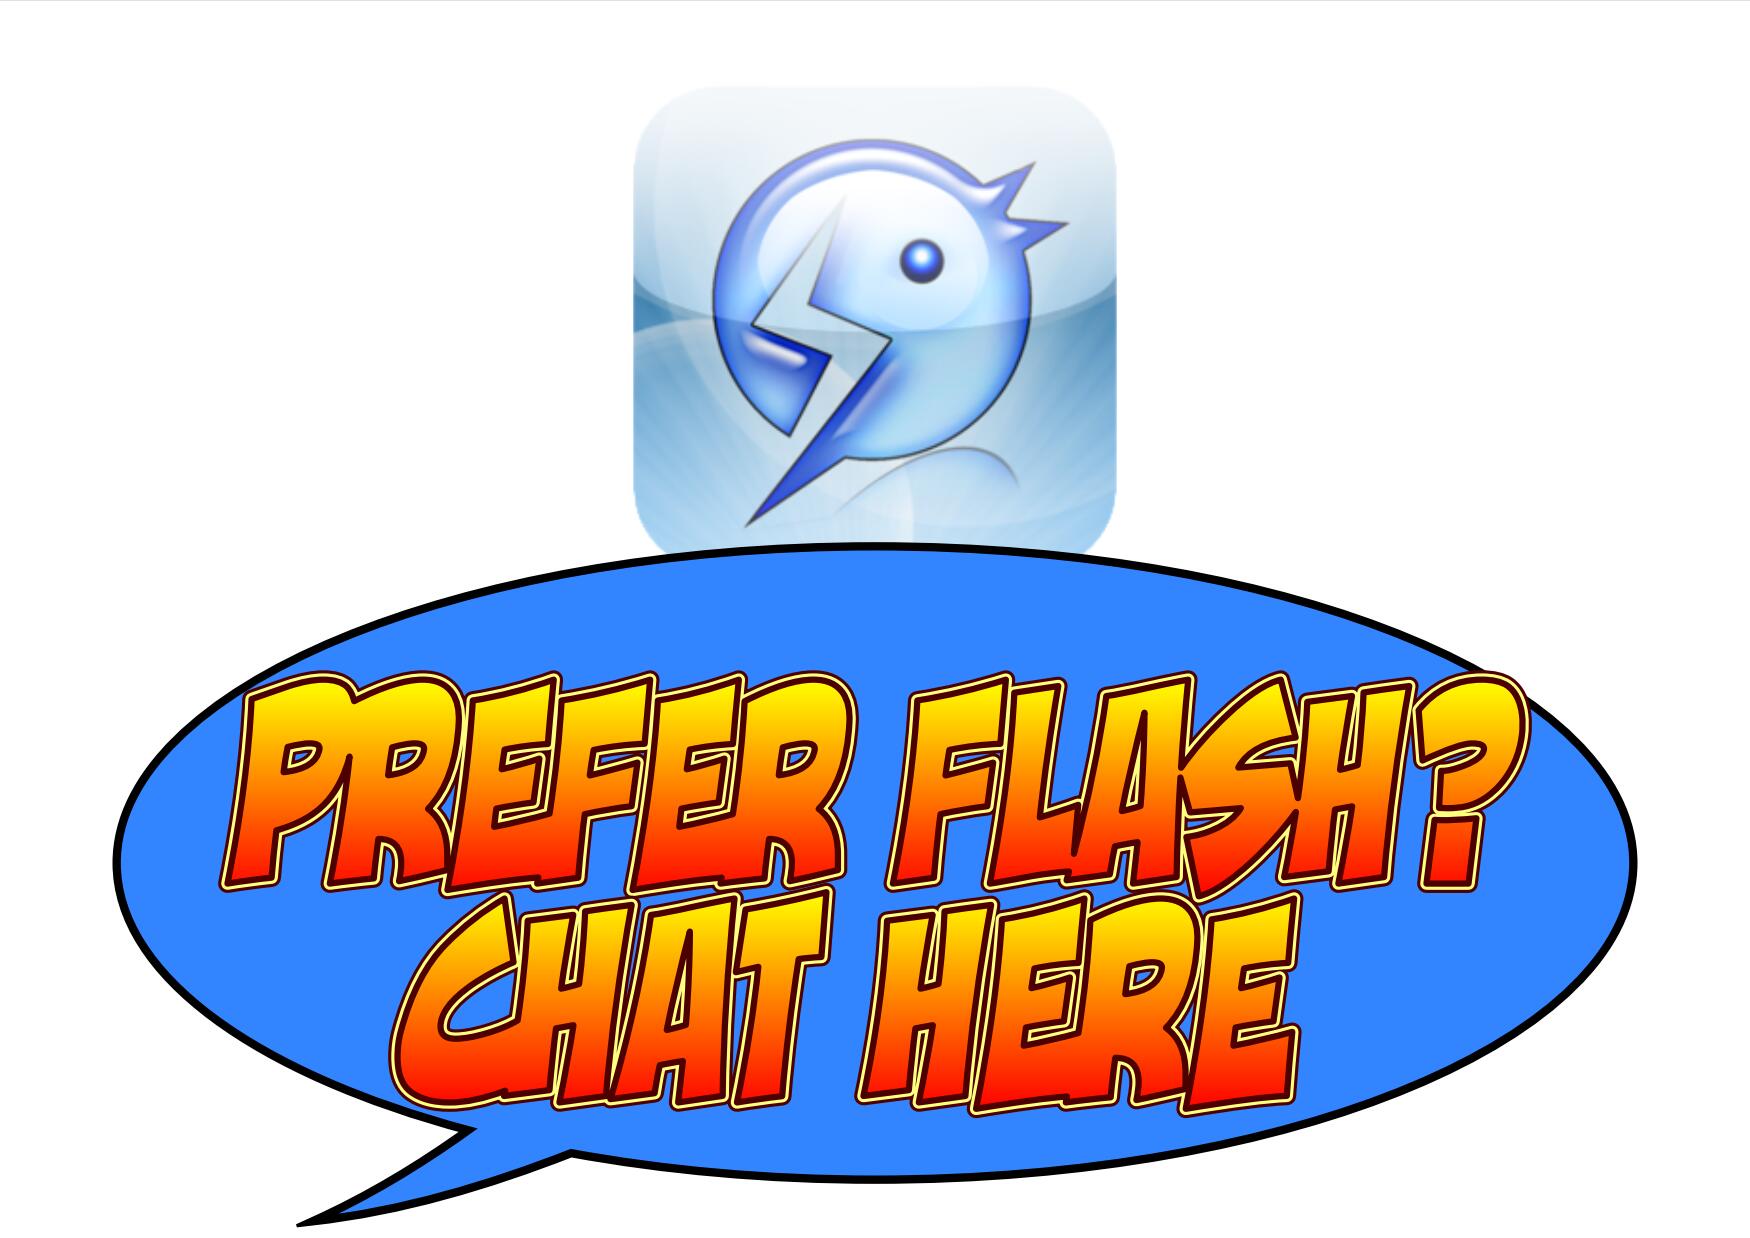 Prefer Flash? Click here